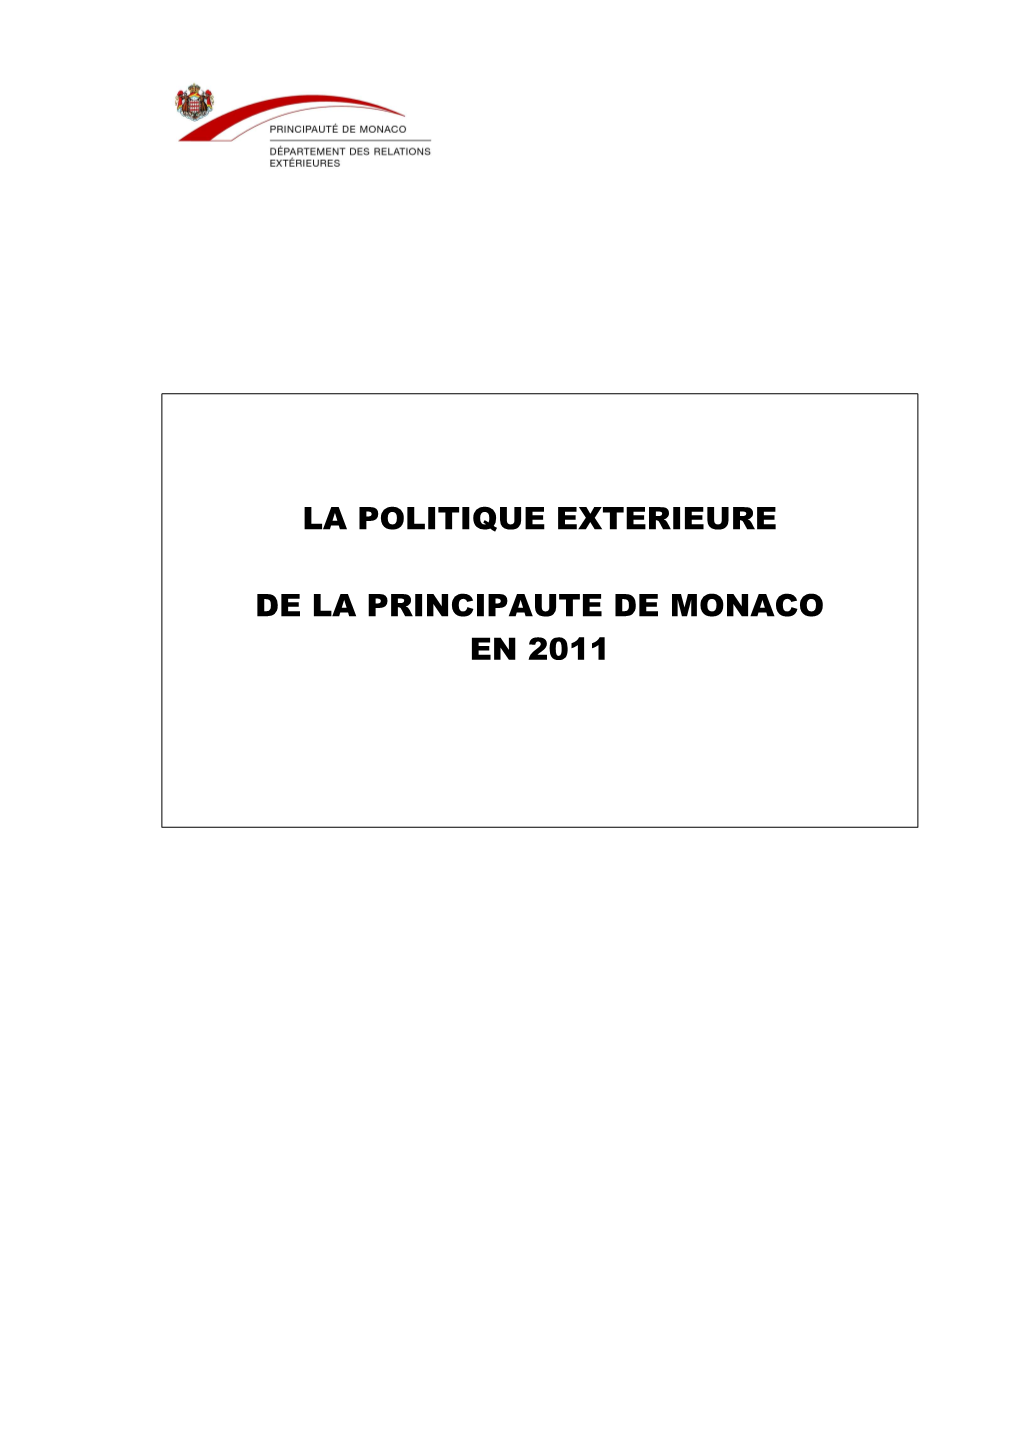 La Politique Exterieure De La Principaute De Monaco En 2011